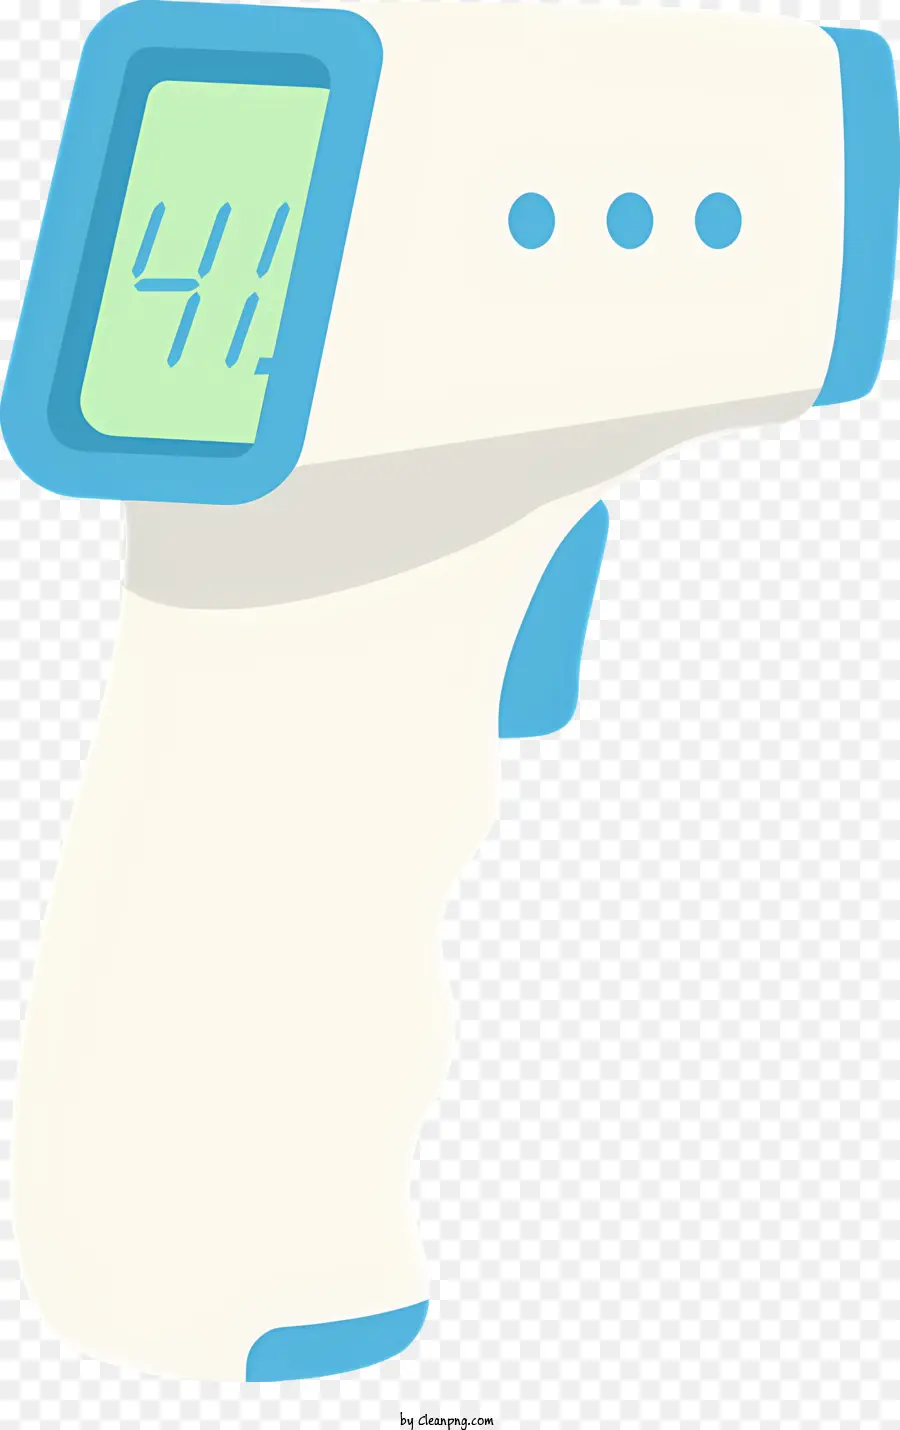 Digitale Thermometertemperaturanzeige Blau und weiße rechteckige Form Handheld -Gerät - Digitales Thermometer mit blau -weißes Display